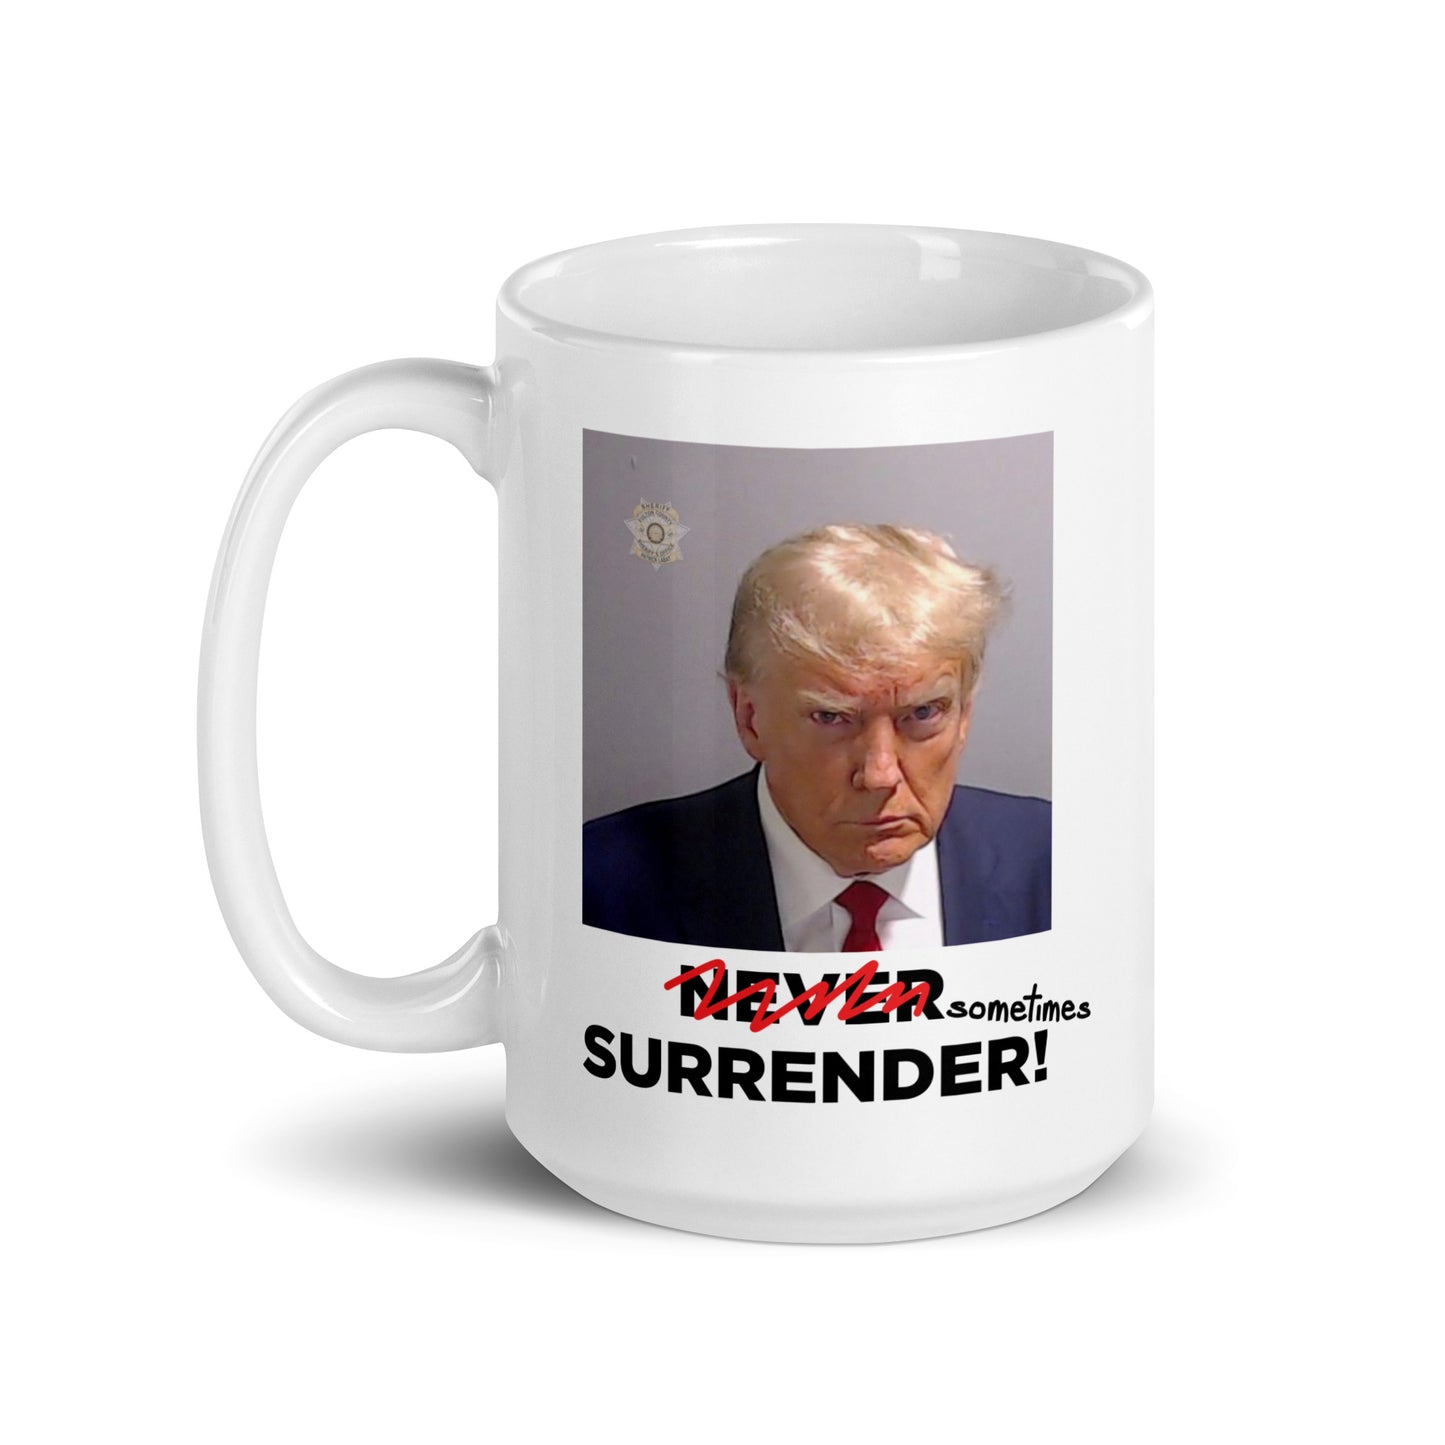 Sometimes Surrender (Trump Mugshot) mug